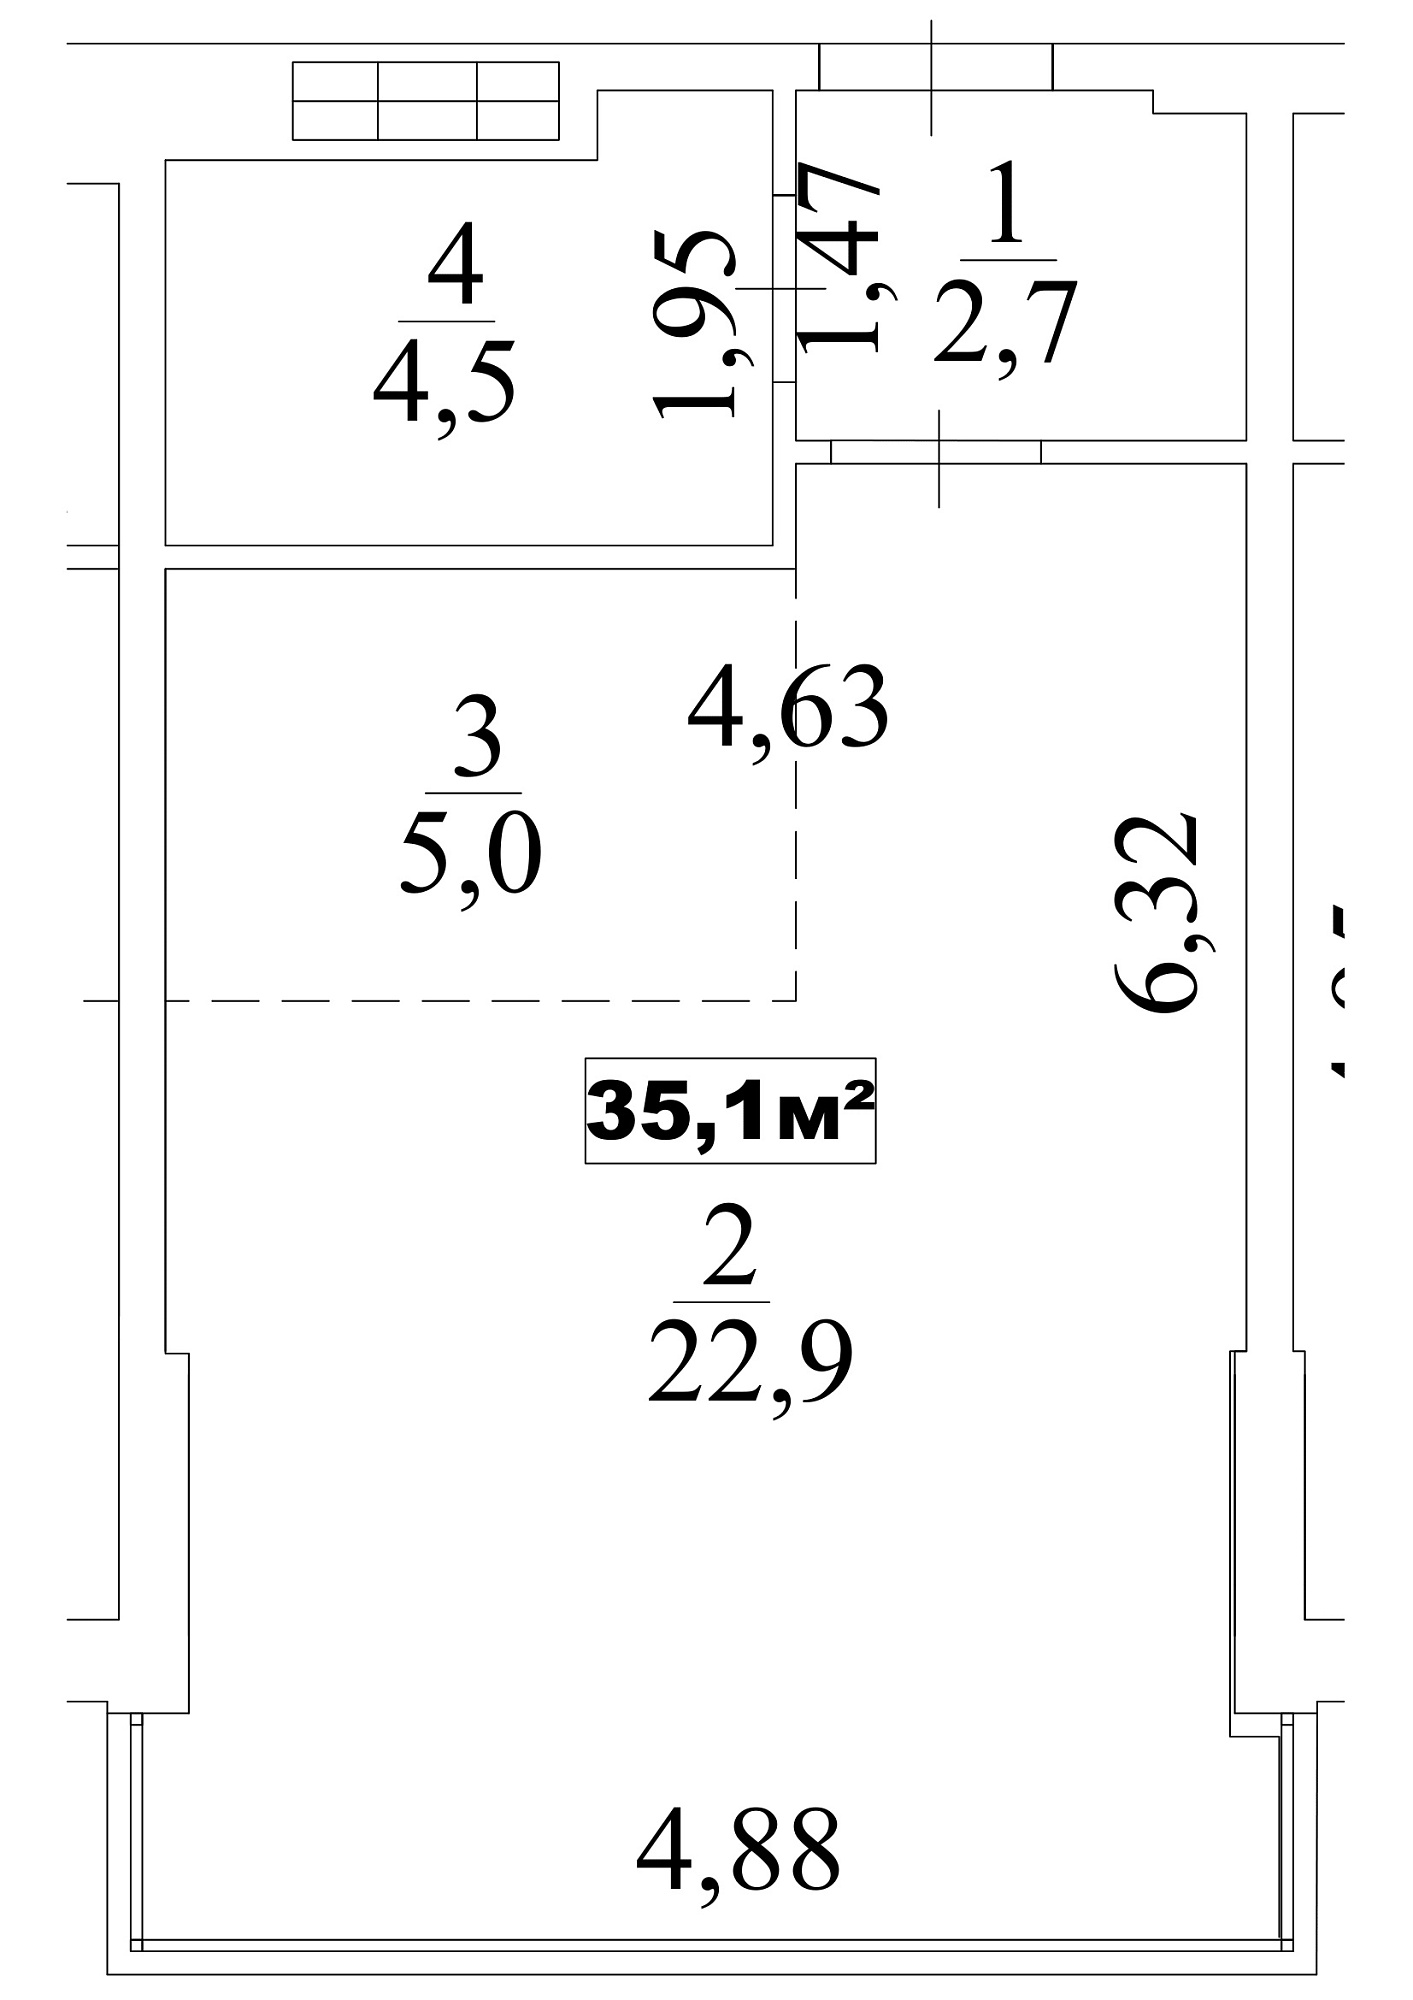 Планування Smart-квартира площею 35.1м2, AB-10-08/0064б.